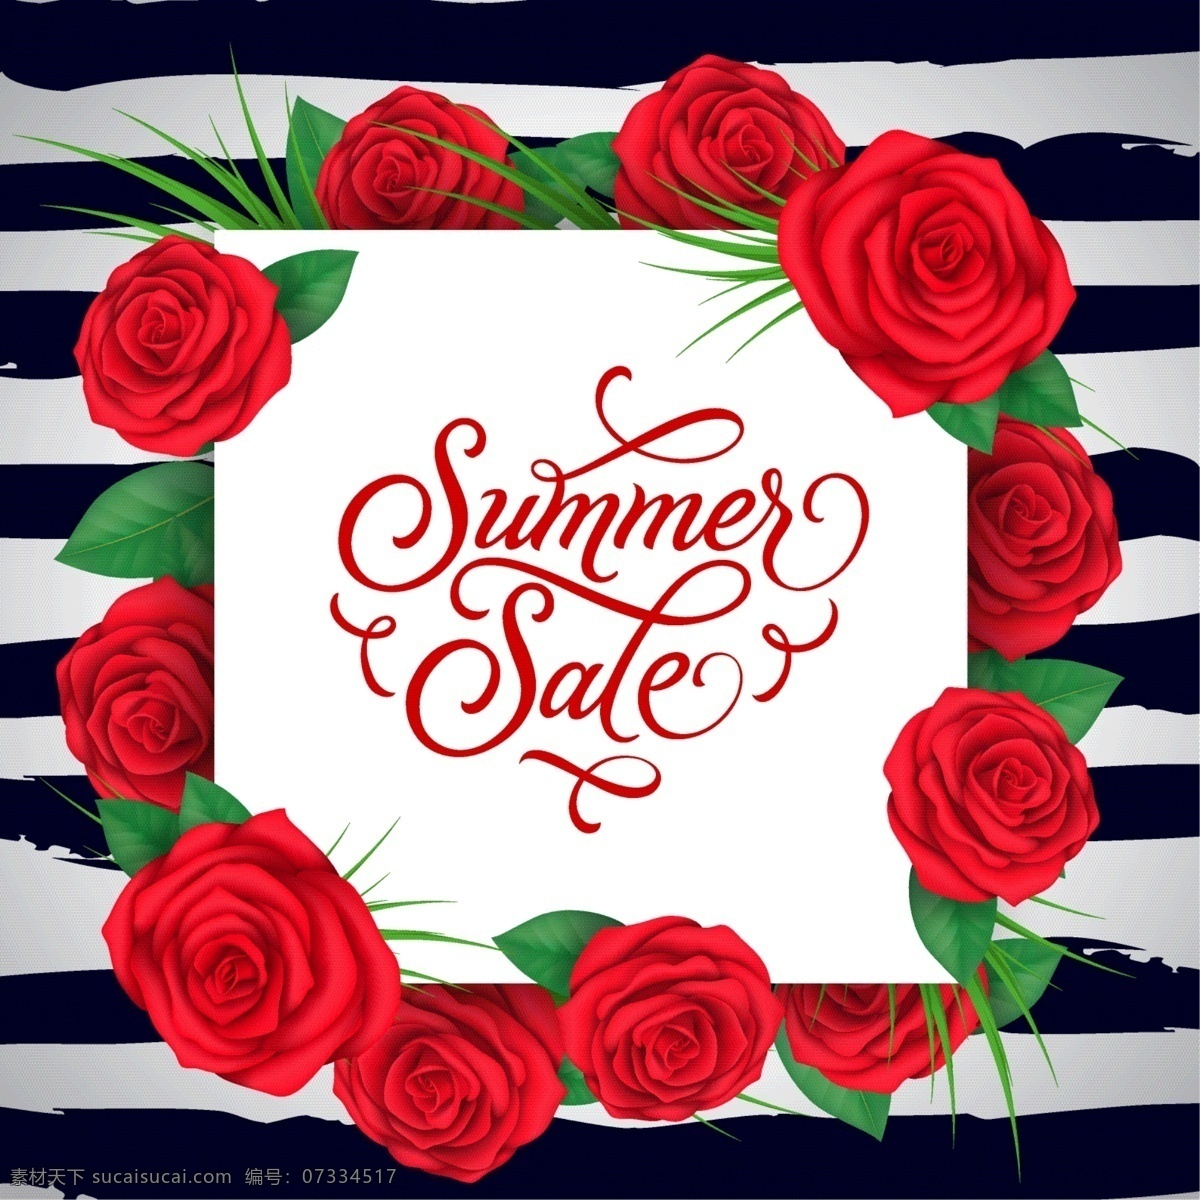 夏日 红玫瑰 销售 背景 花卉 夏季 海洋 海滩 阳光 购物 红色 墙纸 促销 折扣 度假 价格 提供 商店 特价